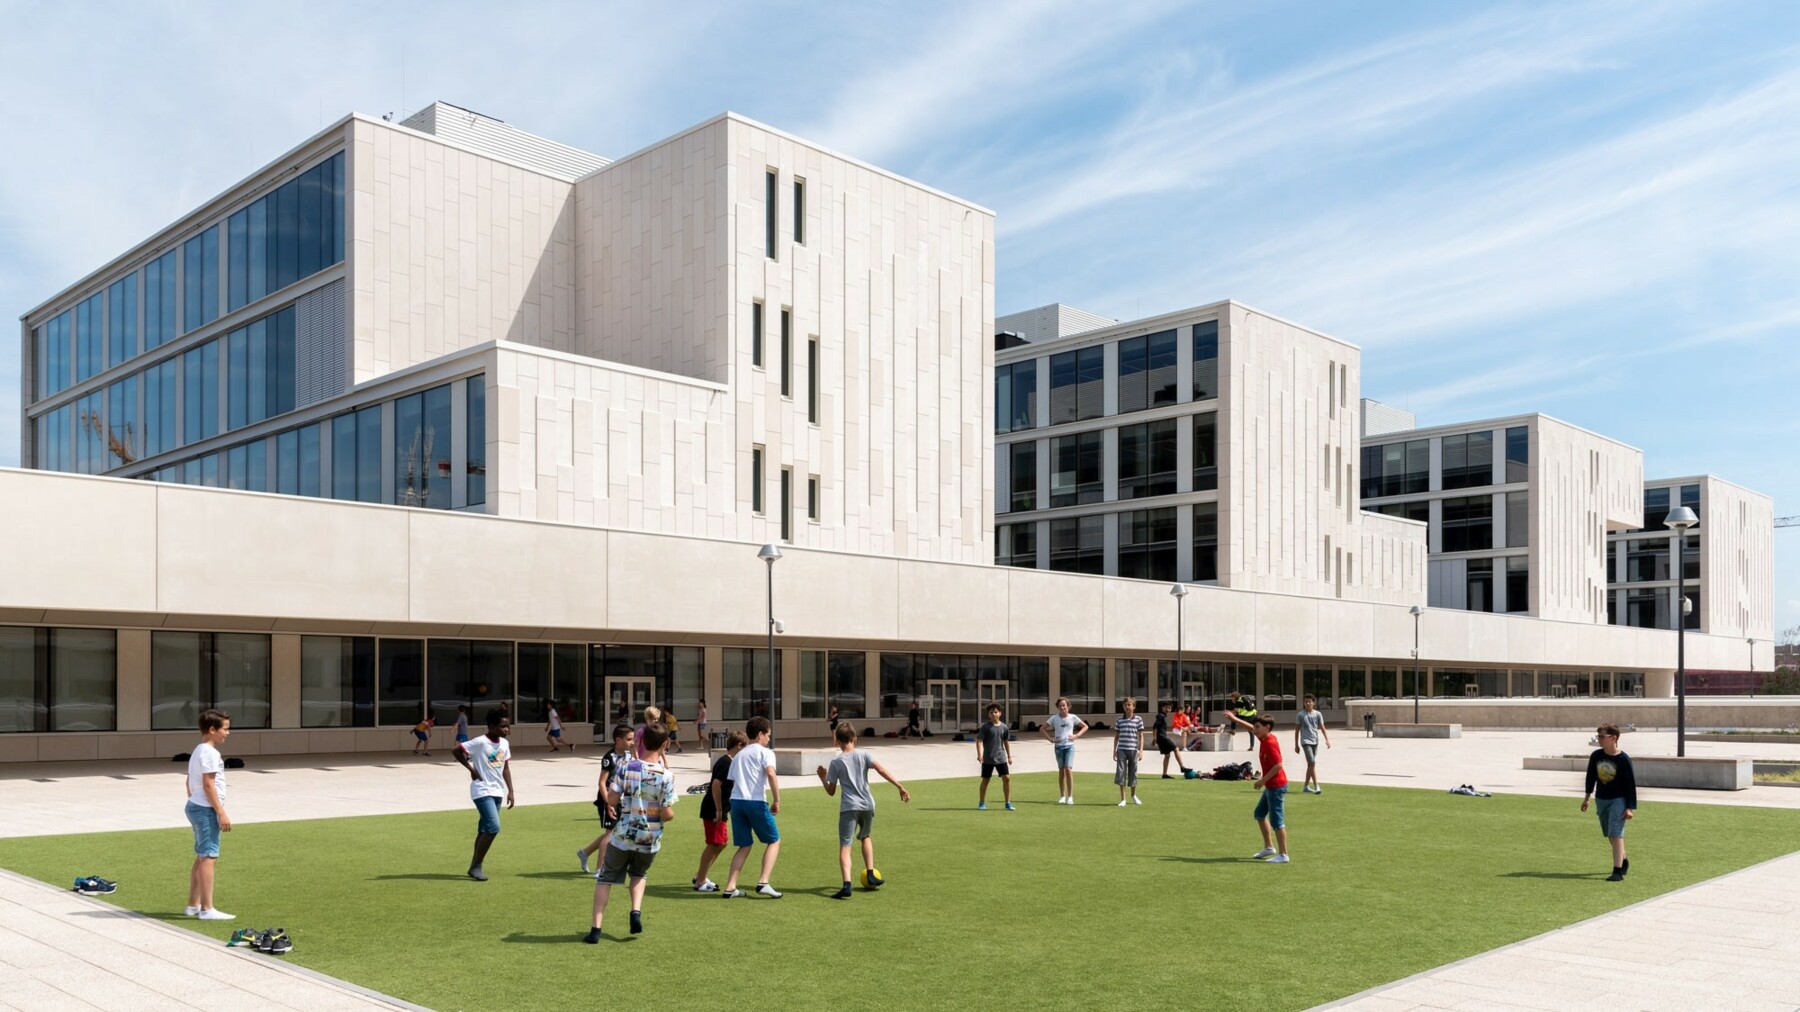 Dieses moderne Schulgebäude besticht nicht nur außen mit einzigartigem Design. Im Inneren tragen Holzverkleidungen in eleganter Weißtanne zu optimaler Akustik und einem dynamischen Raumdesign bei.